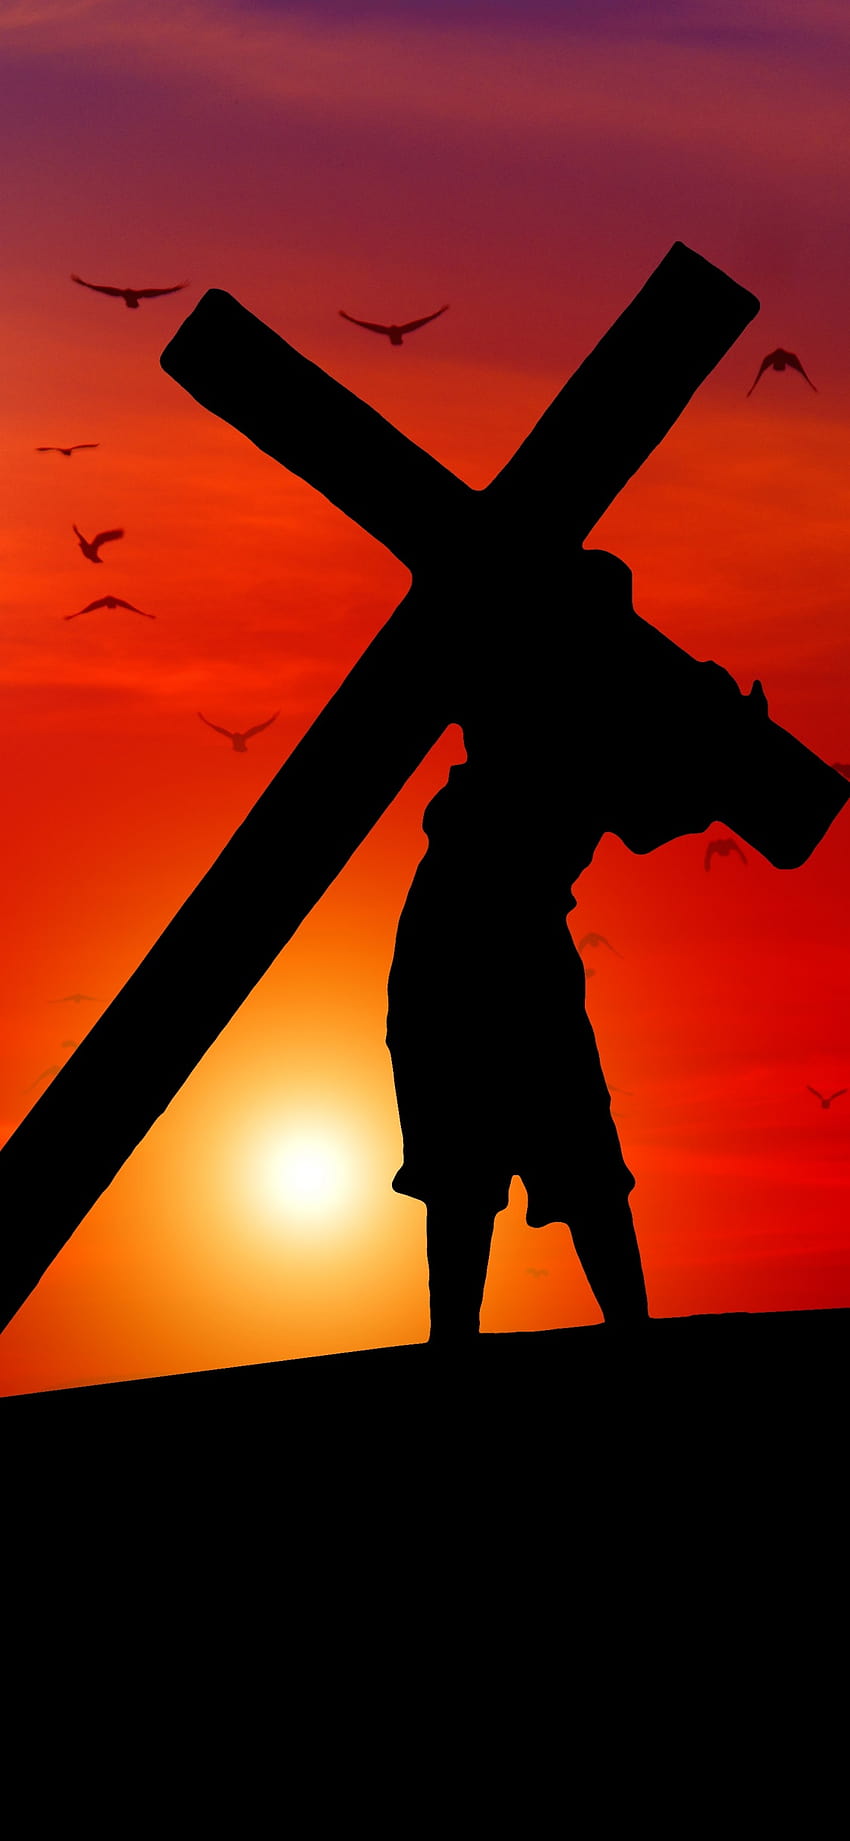 Cruz de Jesus, Pôr do sol, Céu laranja, Silhueta, Religião, Fé, grafia, iphone de jesus Papel de parede de celular HD